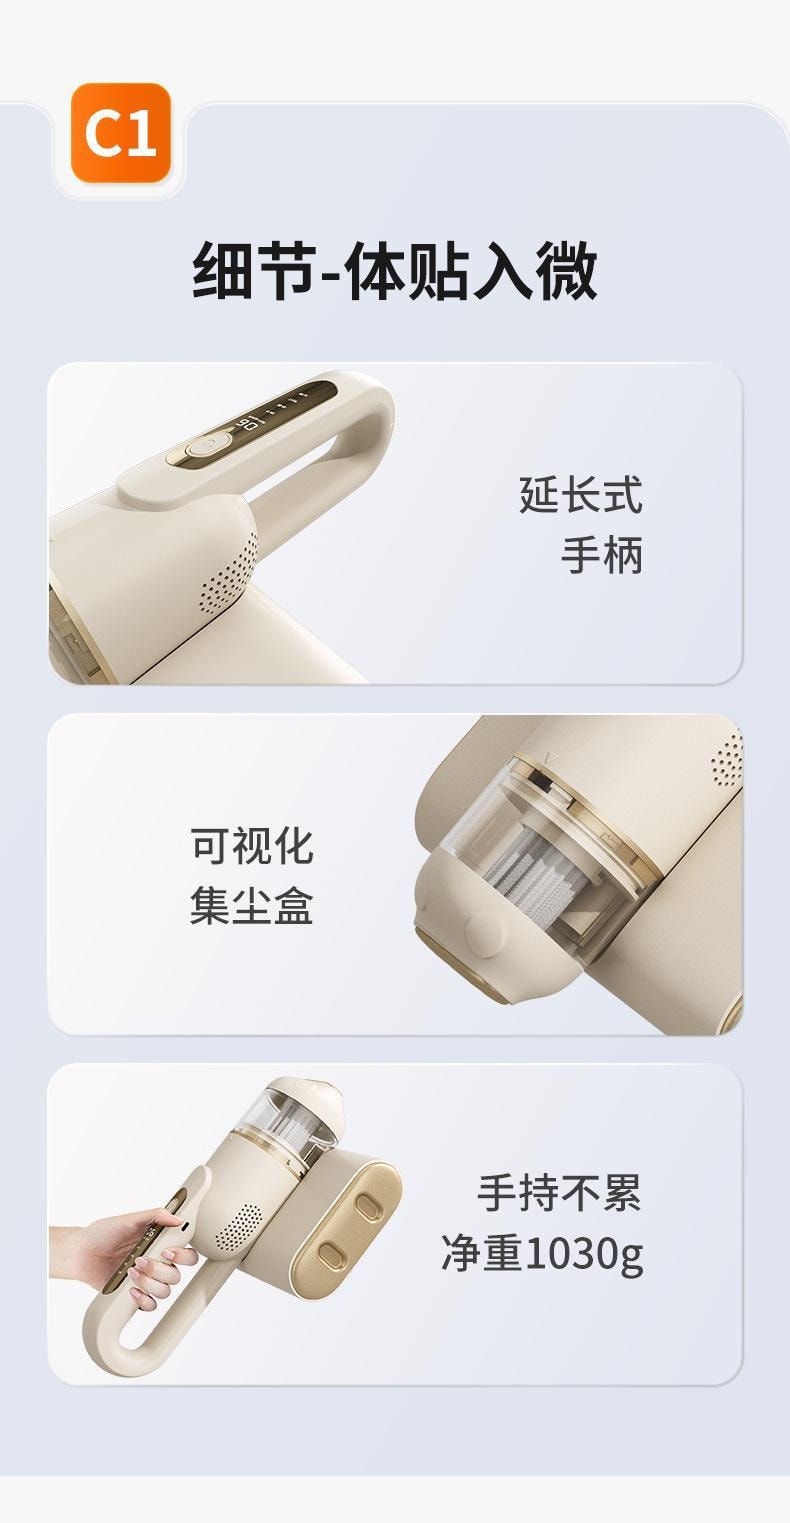 【中国直邮】USB无线充电除螨仪 C1 白色 1 份